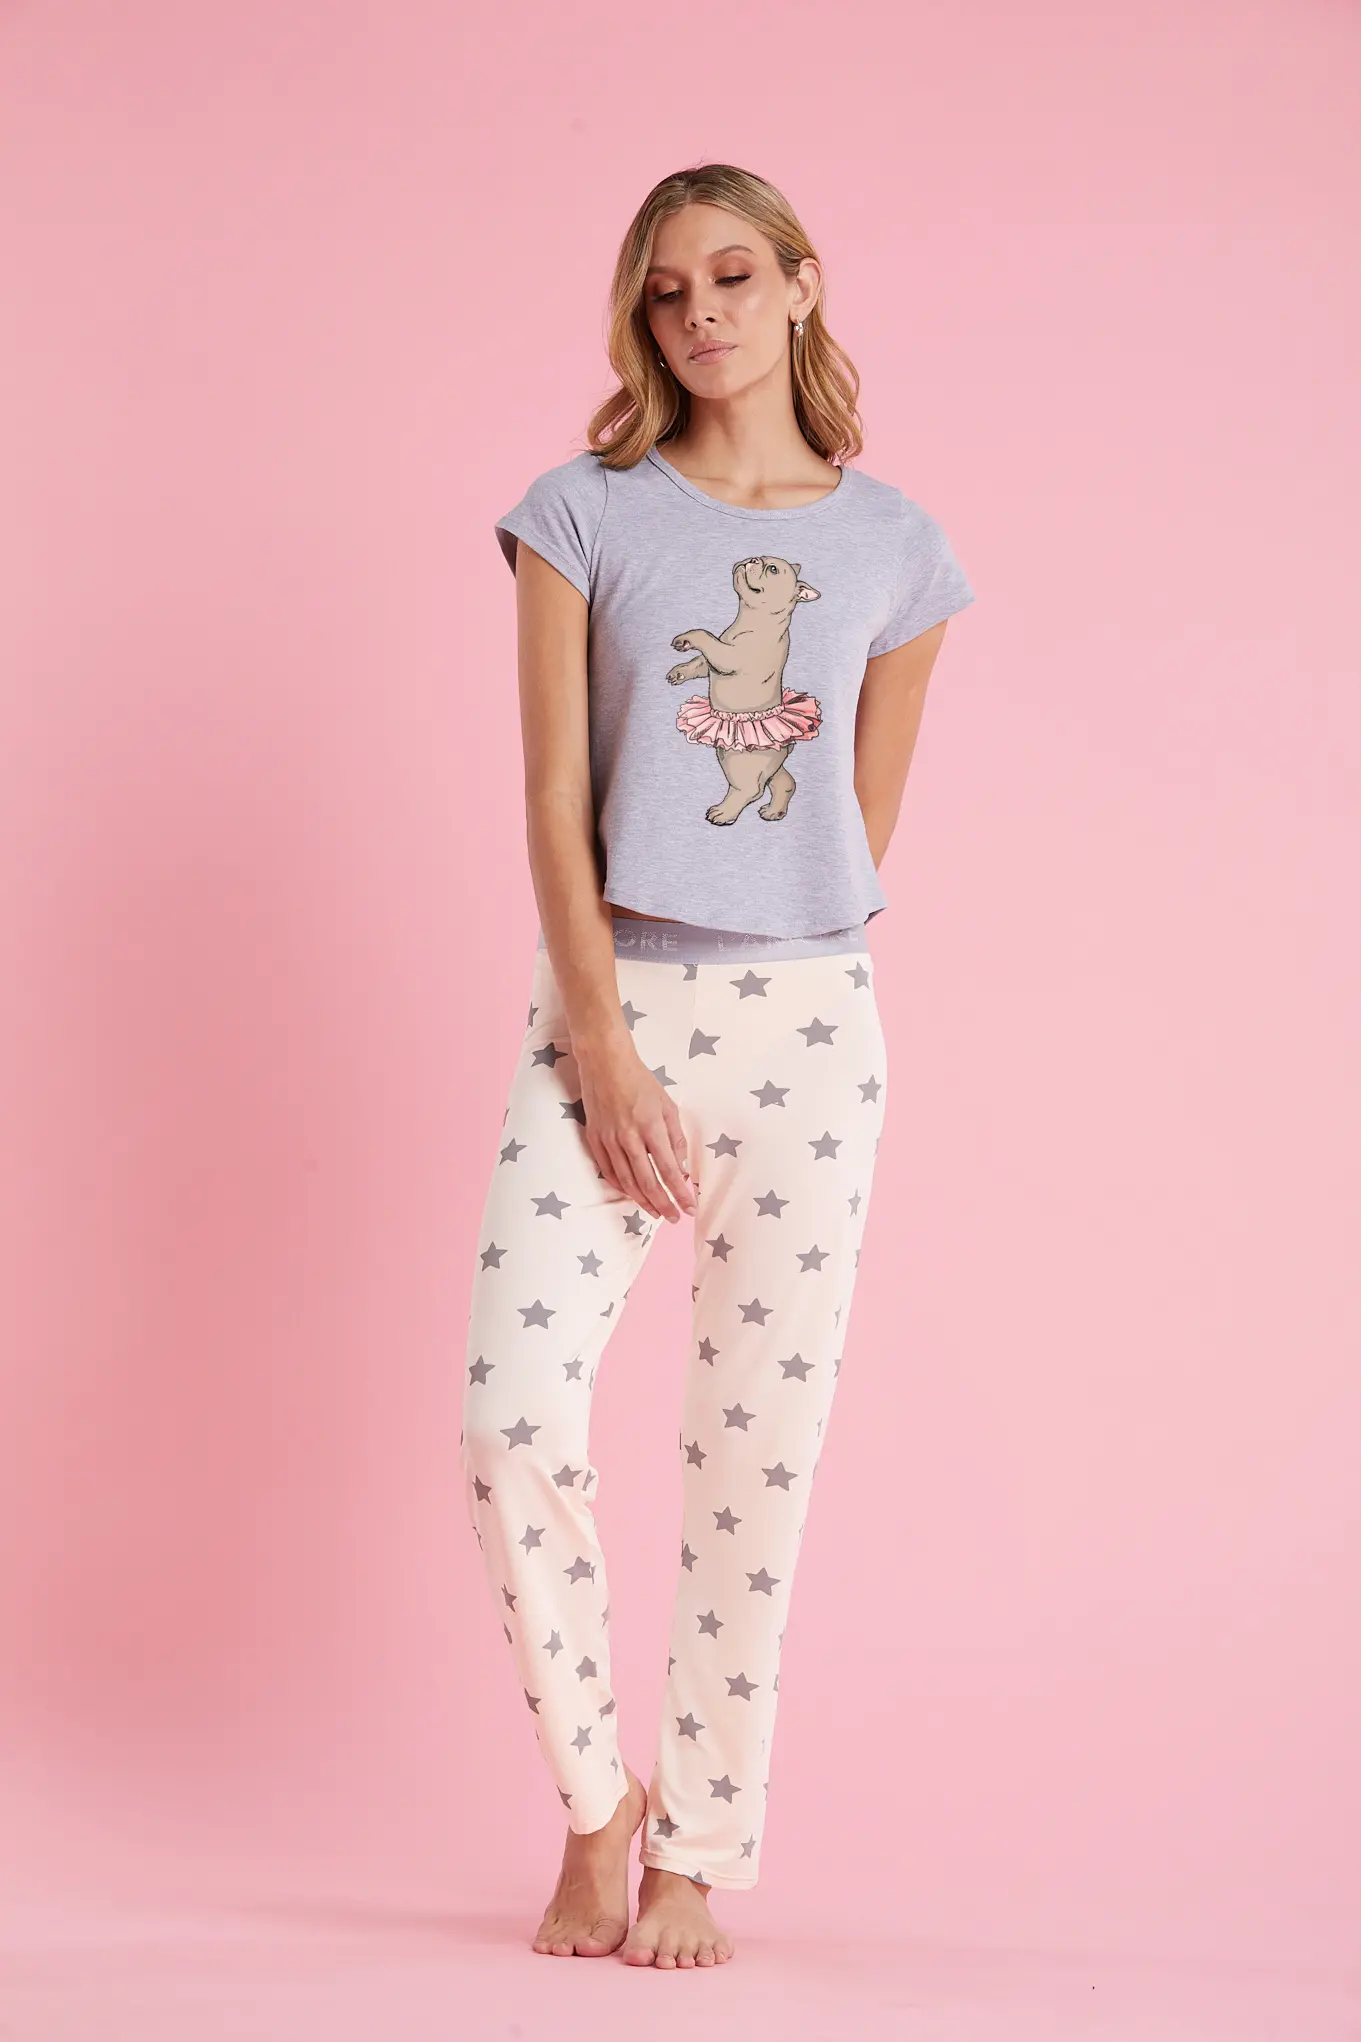 Imagen del producto: Pantalón elástico melon estrellas gris camiseta gris perrito